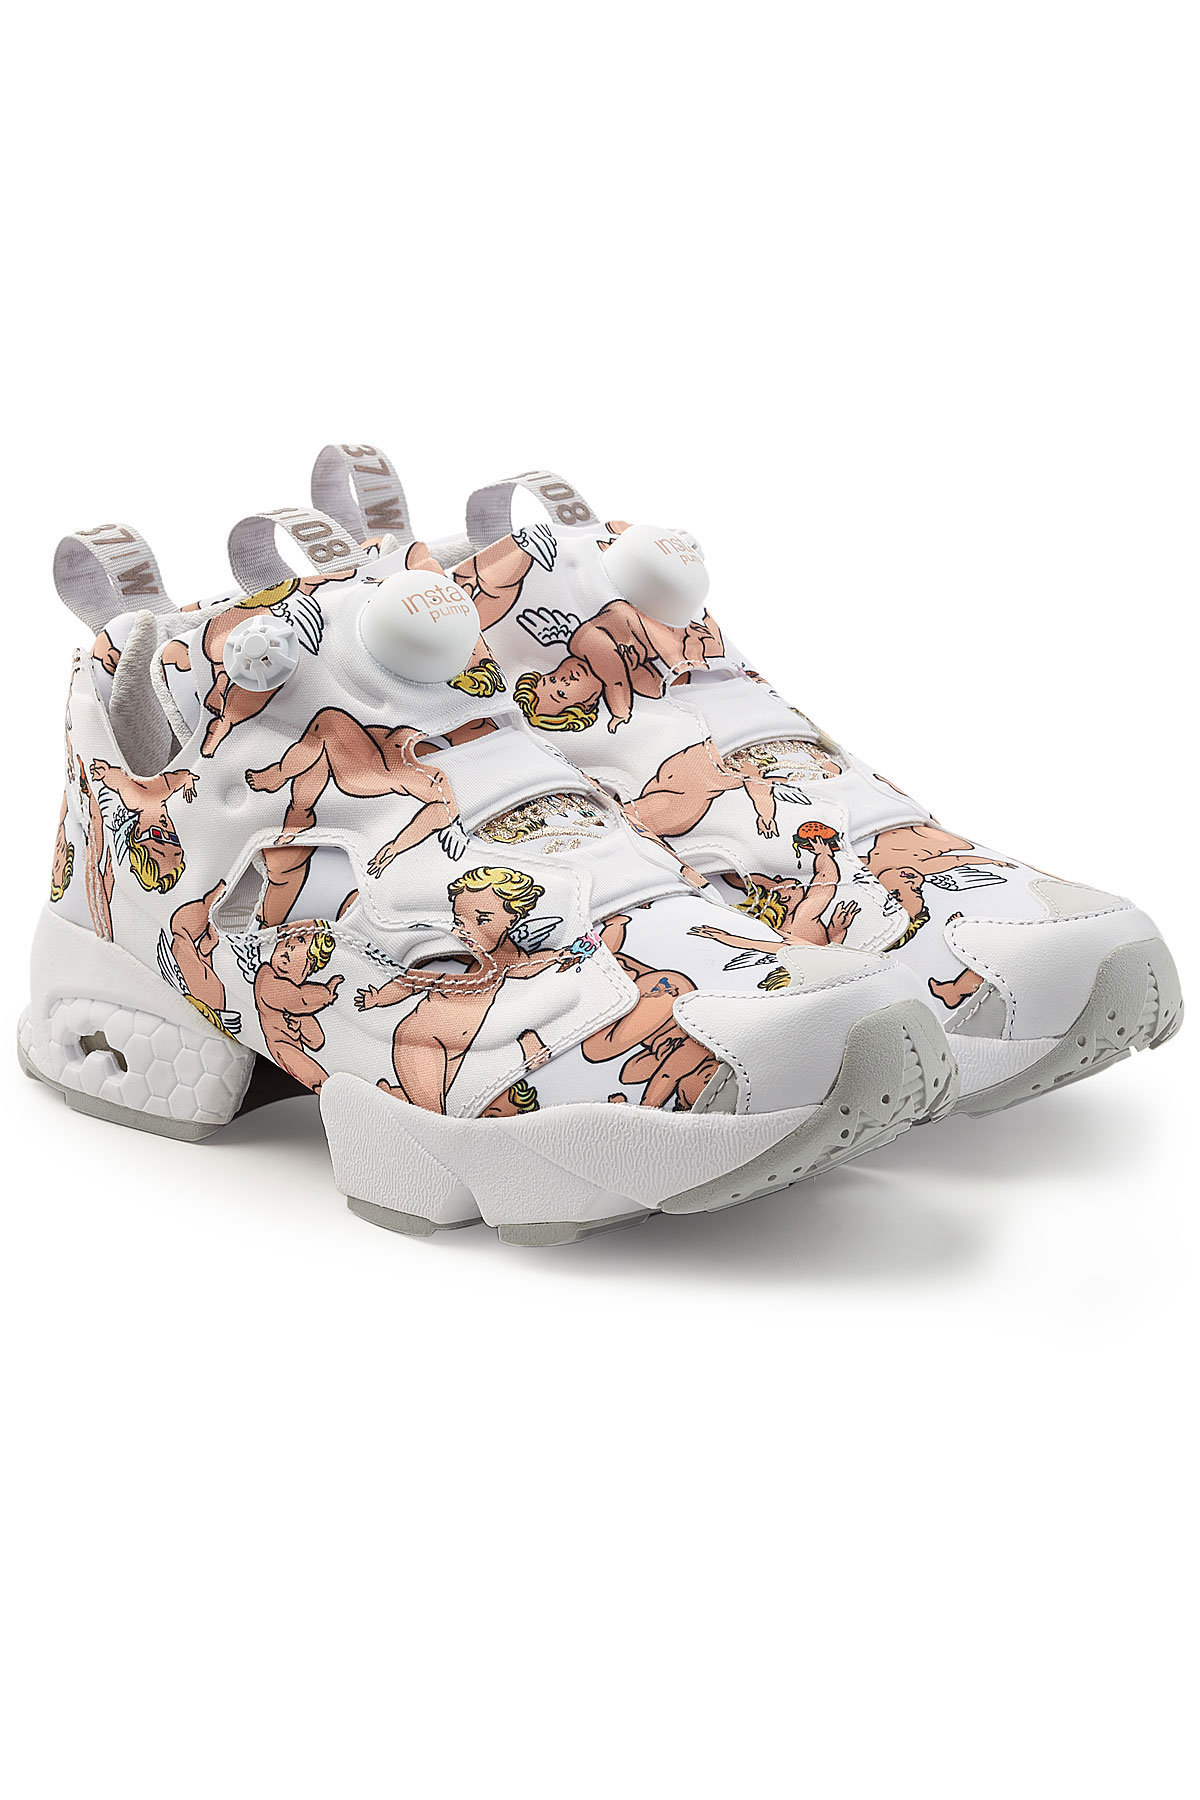 Reebok - InstaPump Fury LA Printed Sneakers